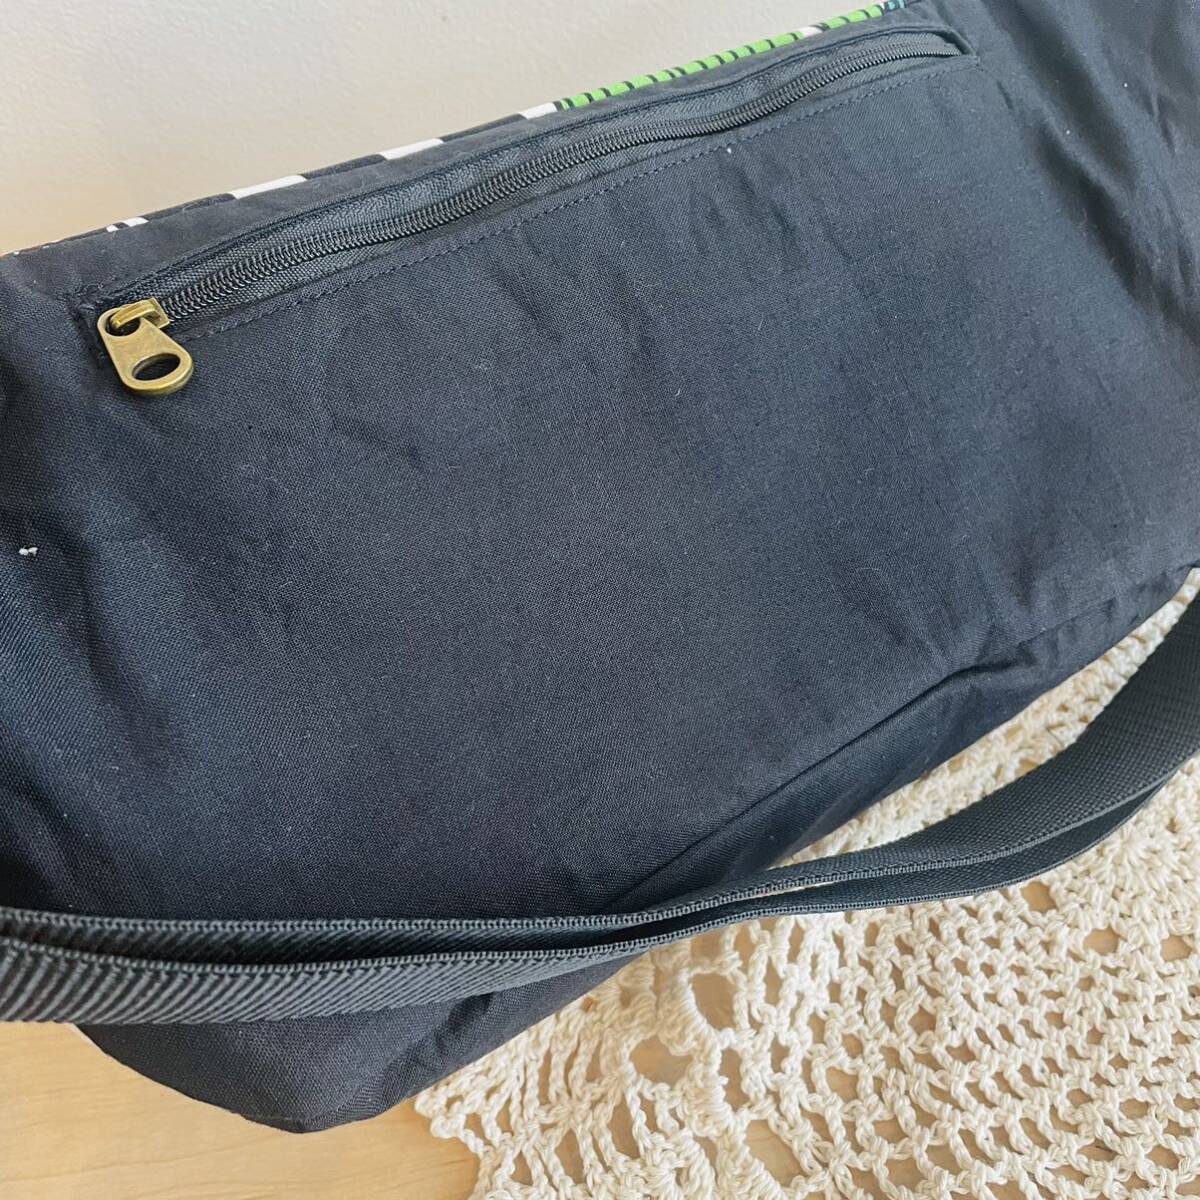  ручная работа marimekko поясная сумка сумка-пояс сумка "body" сумка на плечо Marimekko путешествие подарок цветочный принт вышивка 